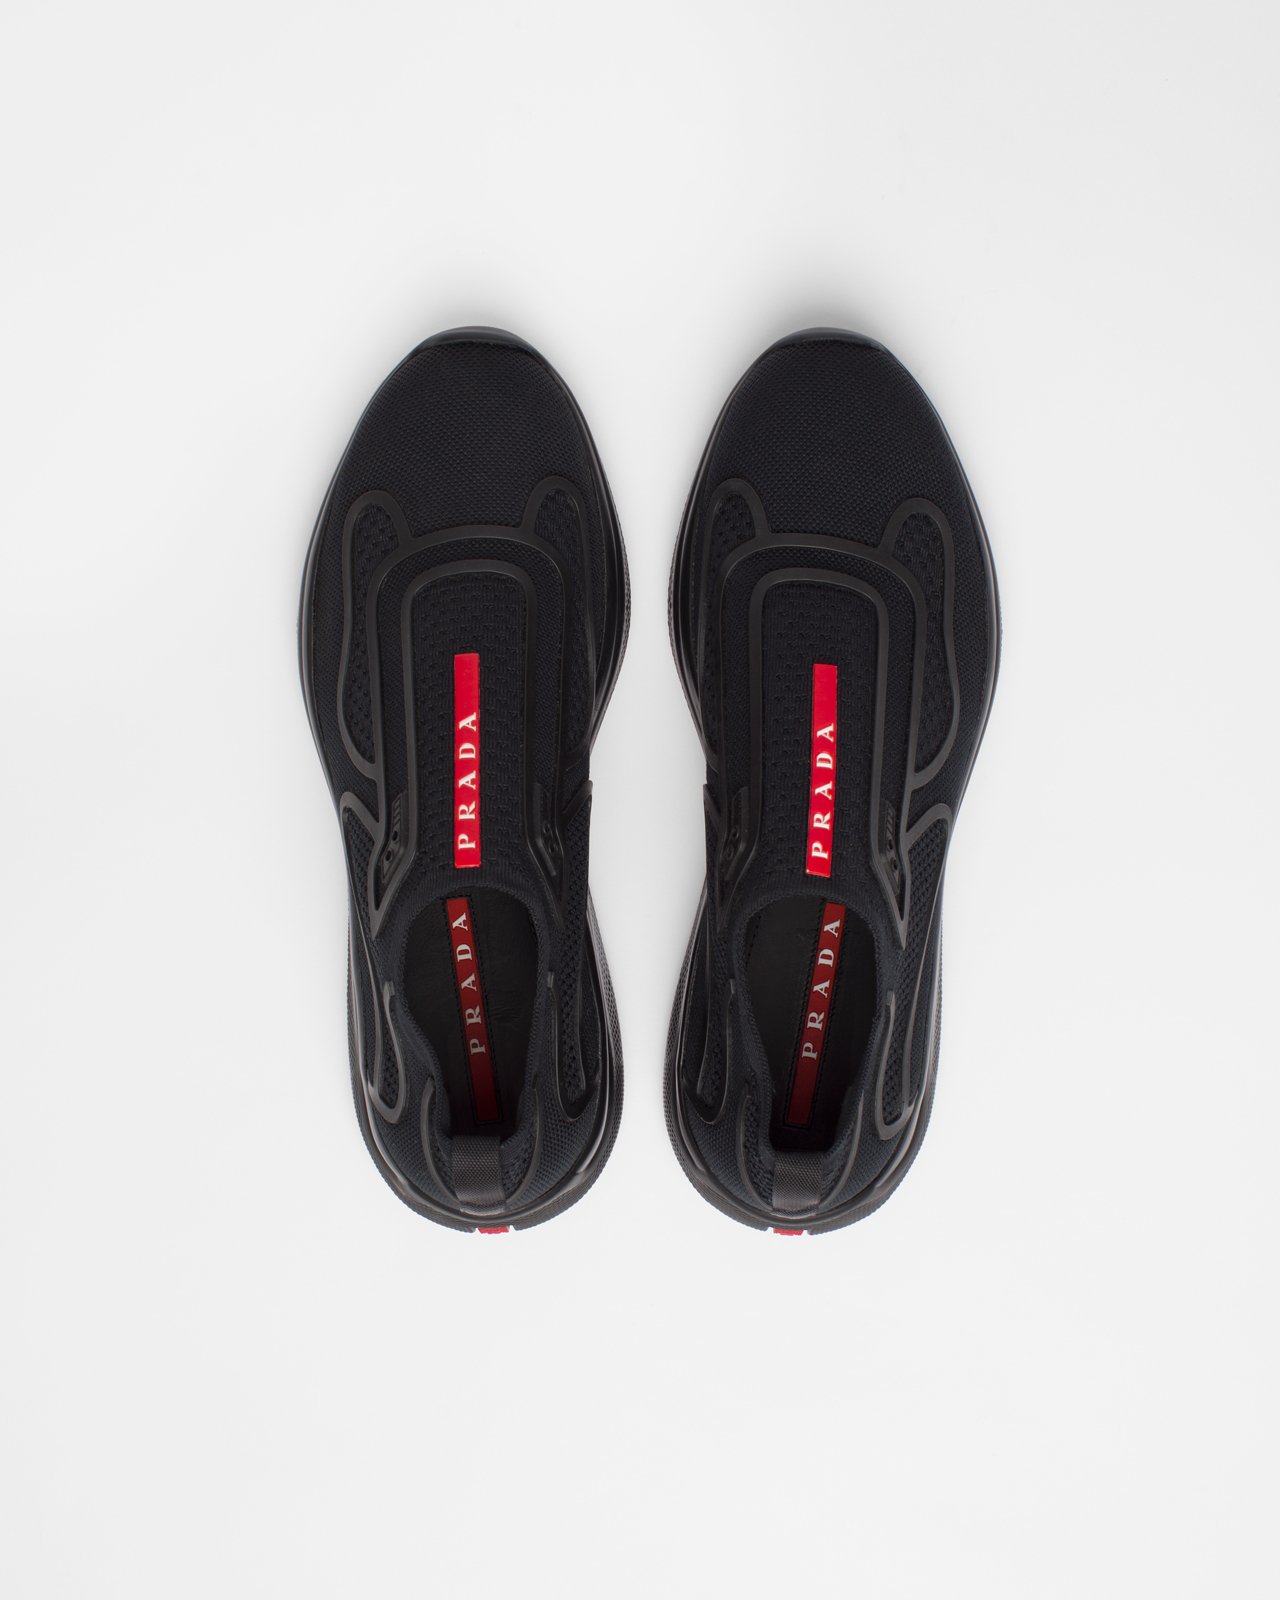 Prada - Men's Americas Cup Knit Slip-On - Footwear - Black - Image 5